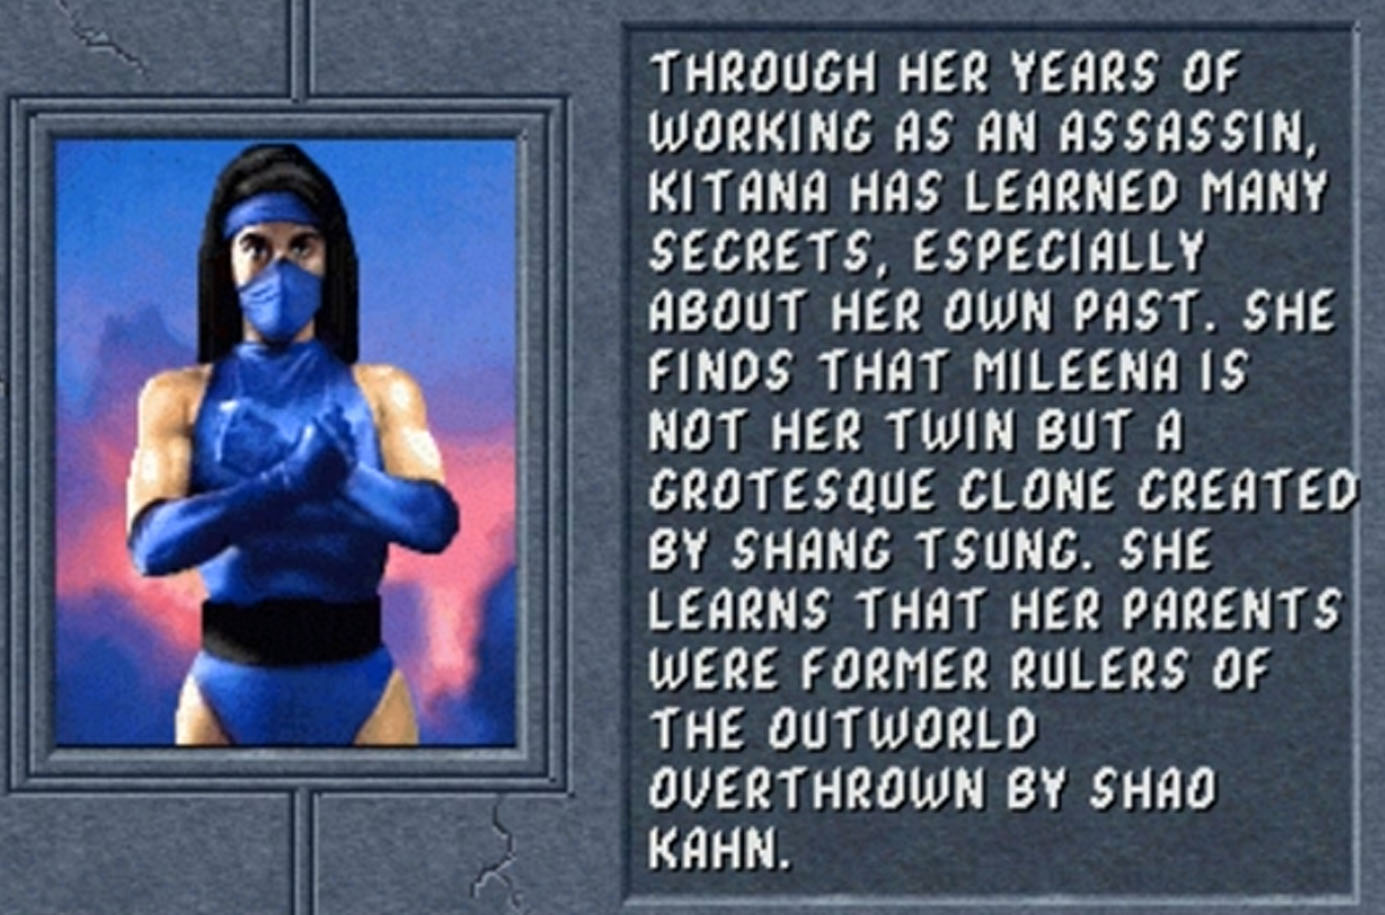 Mortal Kombat Easter Egg Already Teased Kitana's Appearance In MK2